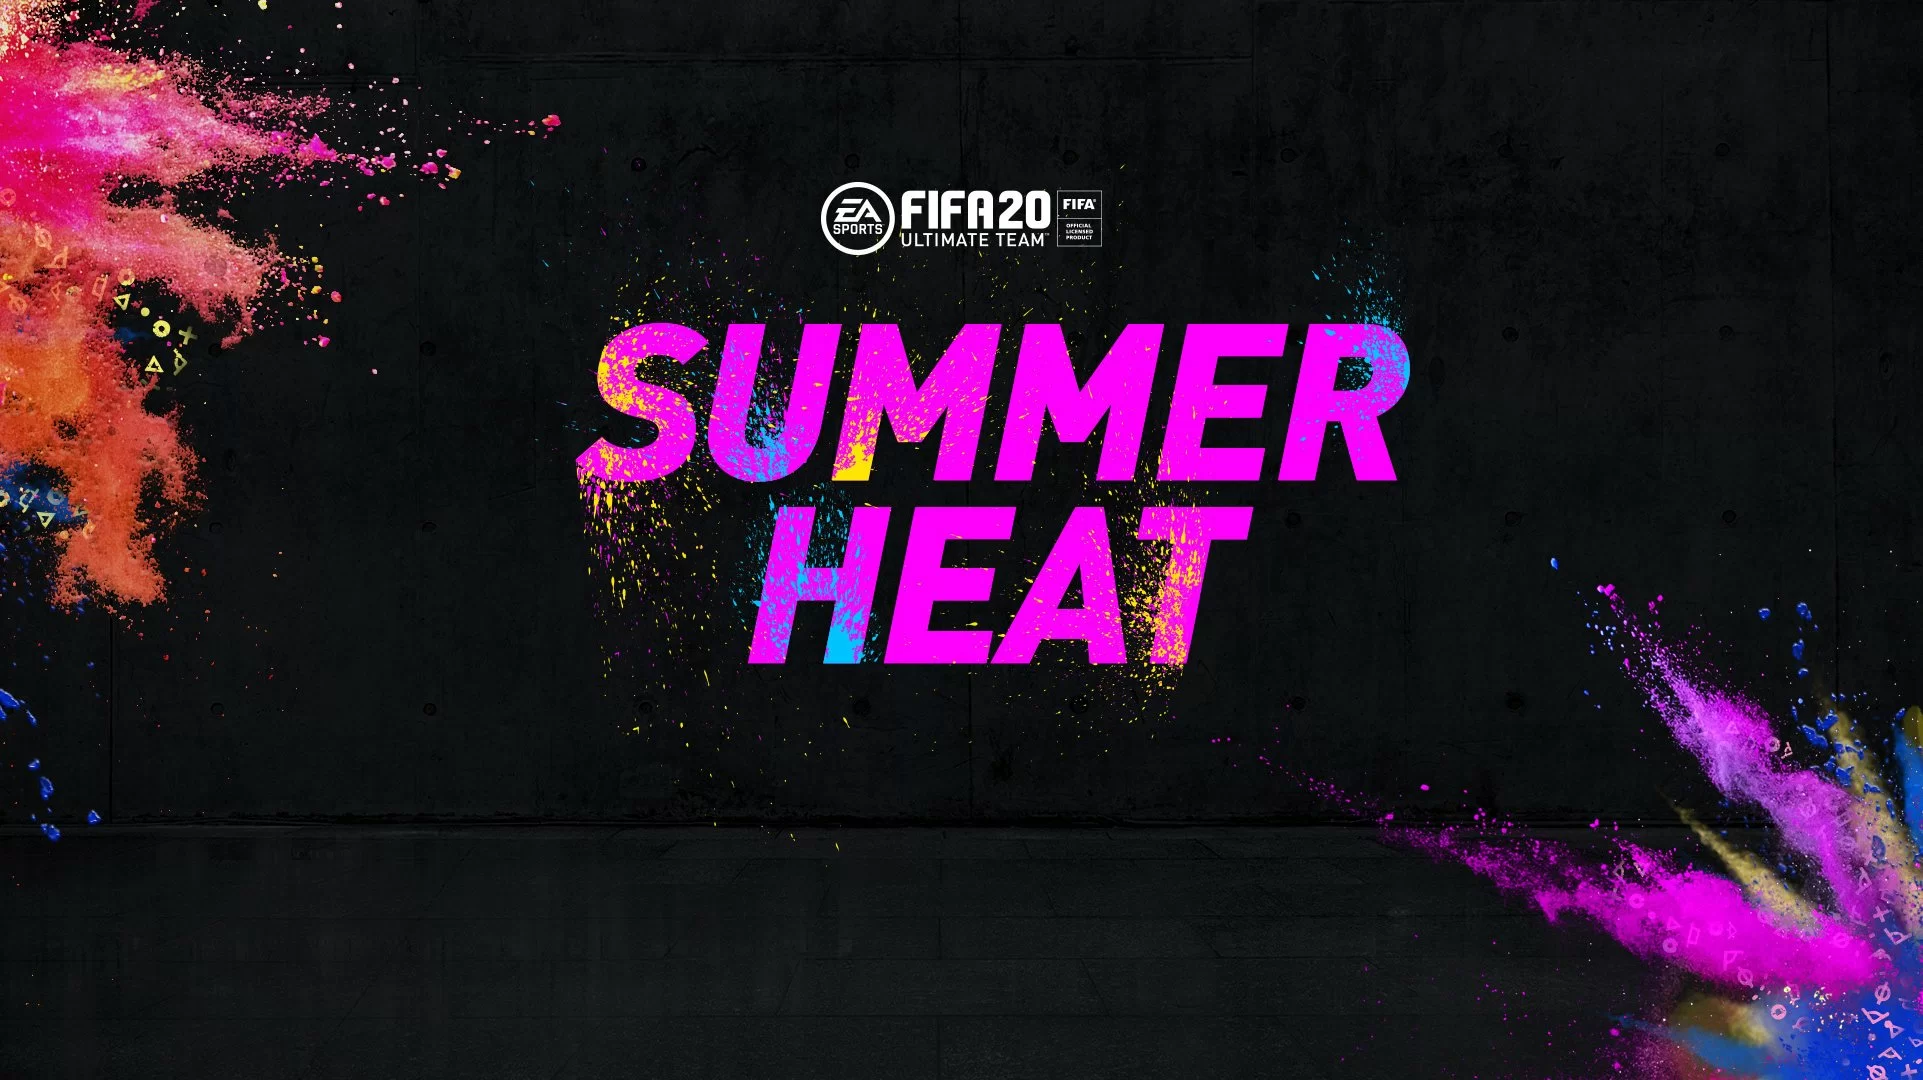 Summer Heat FIFA 20